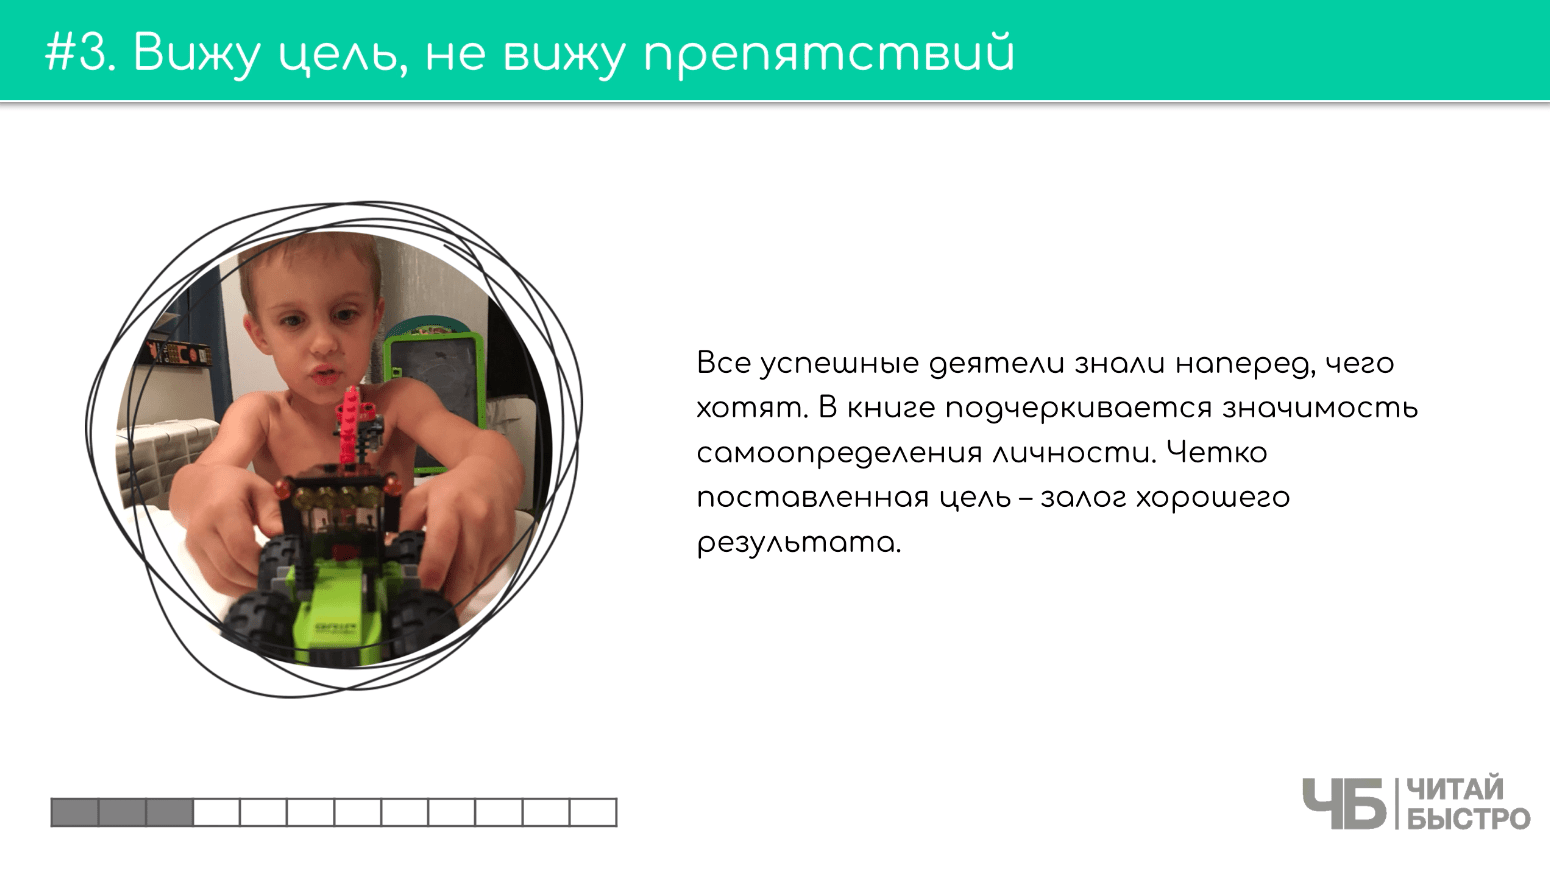 На этом слайде изображен тезис «Вижу цель, не вижу препятствий» и иллюстрация ребенка с игрушечной машинкой.